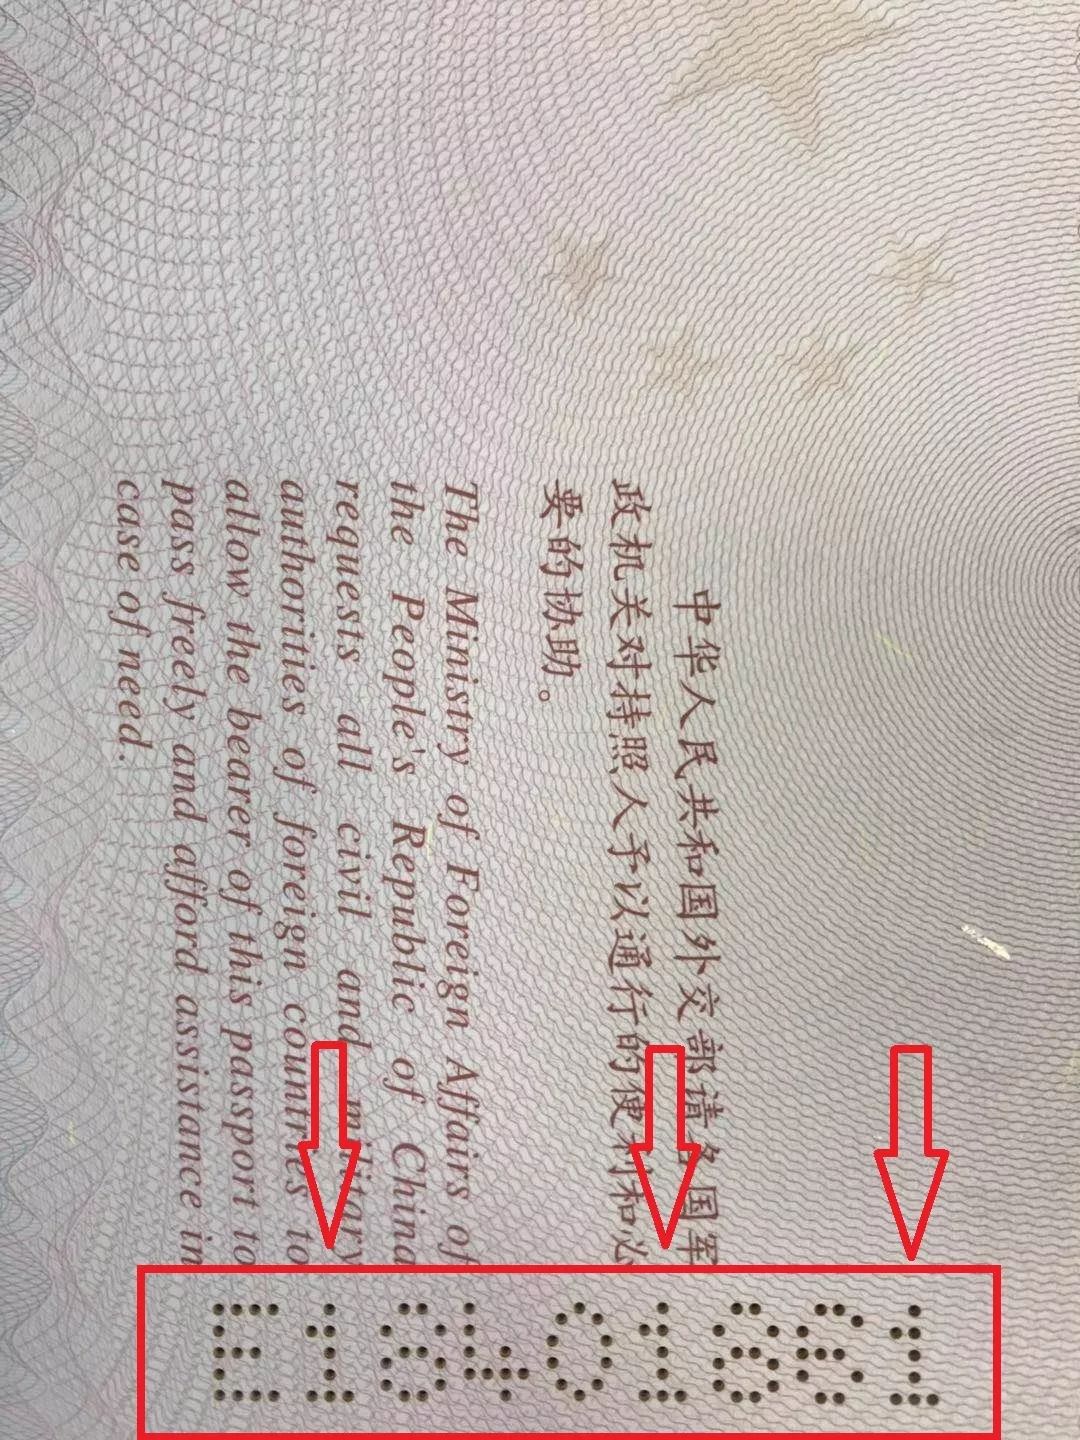 中国普通护照有效期不足6个月，可以正常出境吗？_电话_移民_前往国